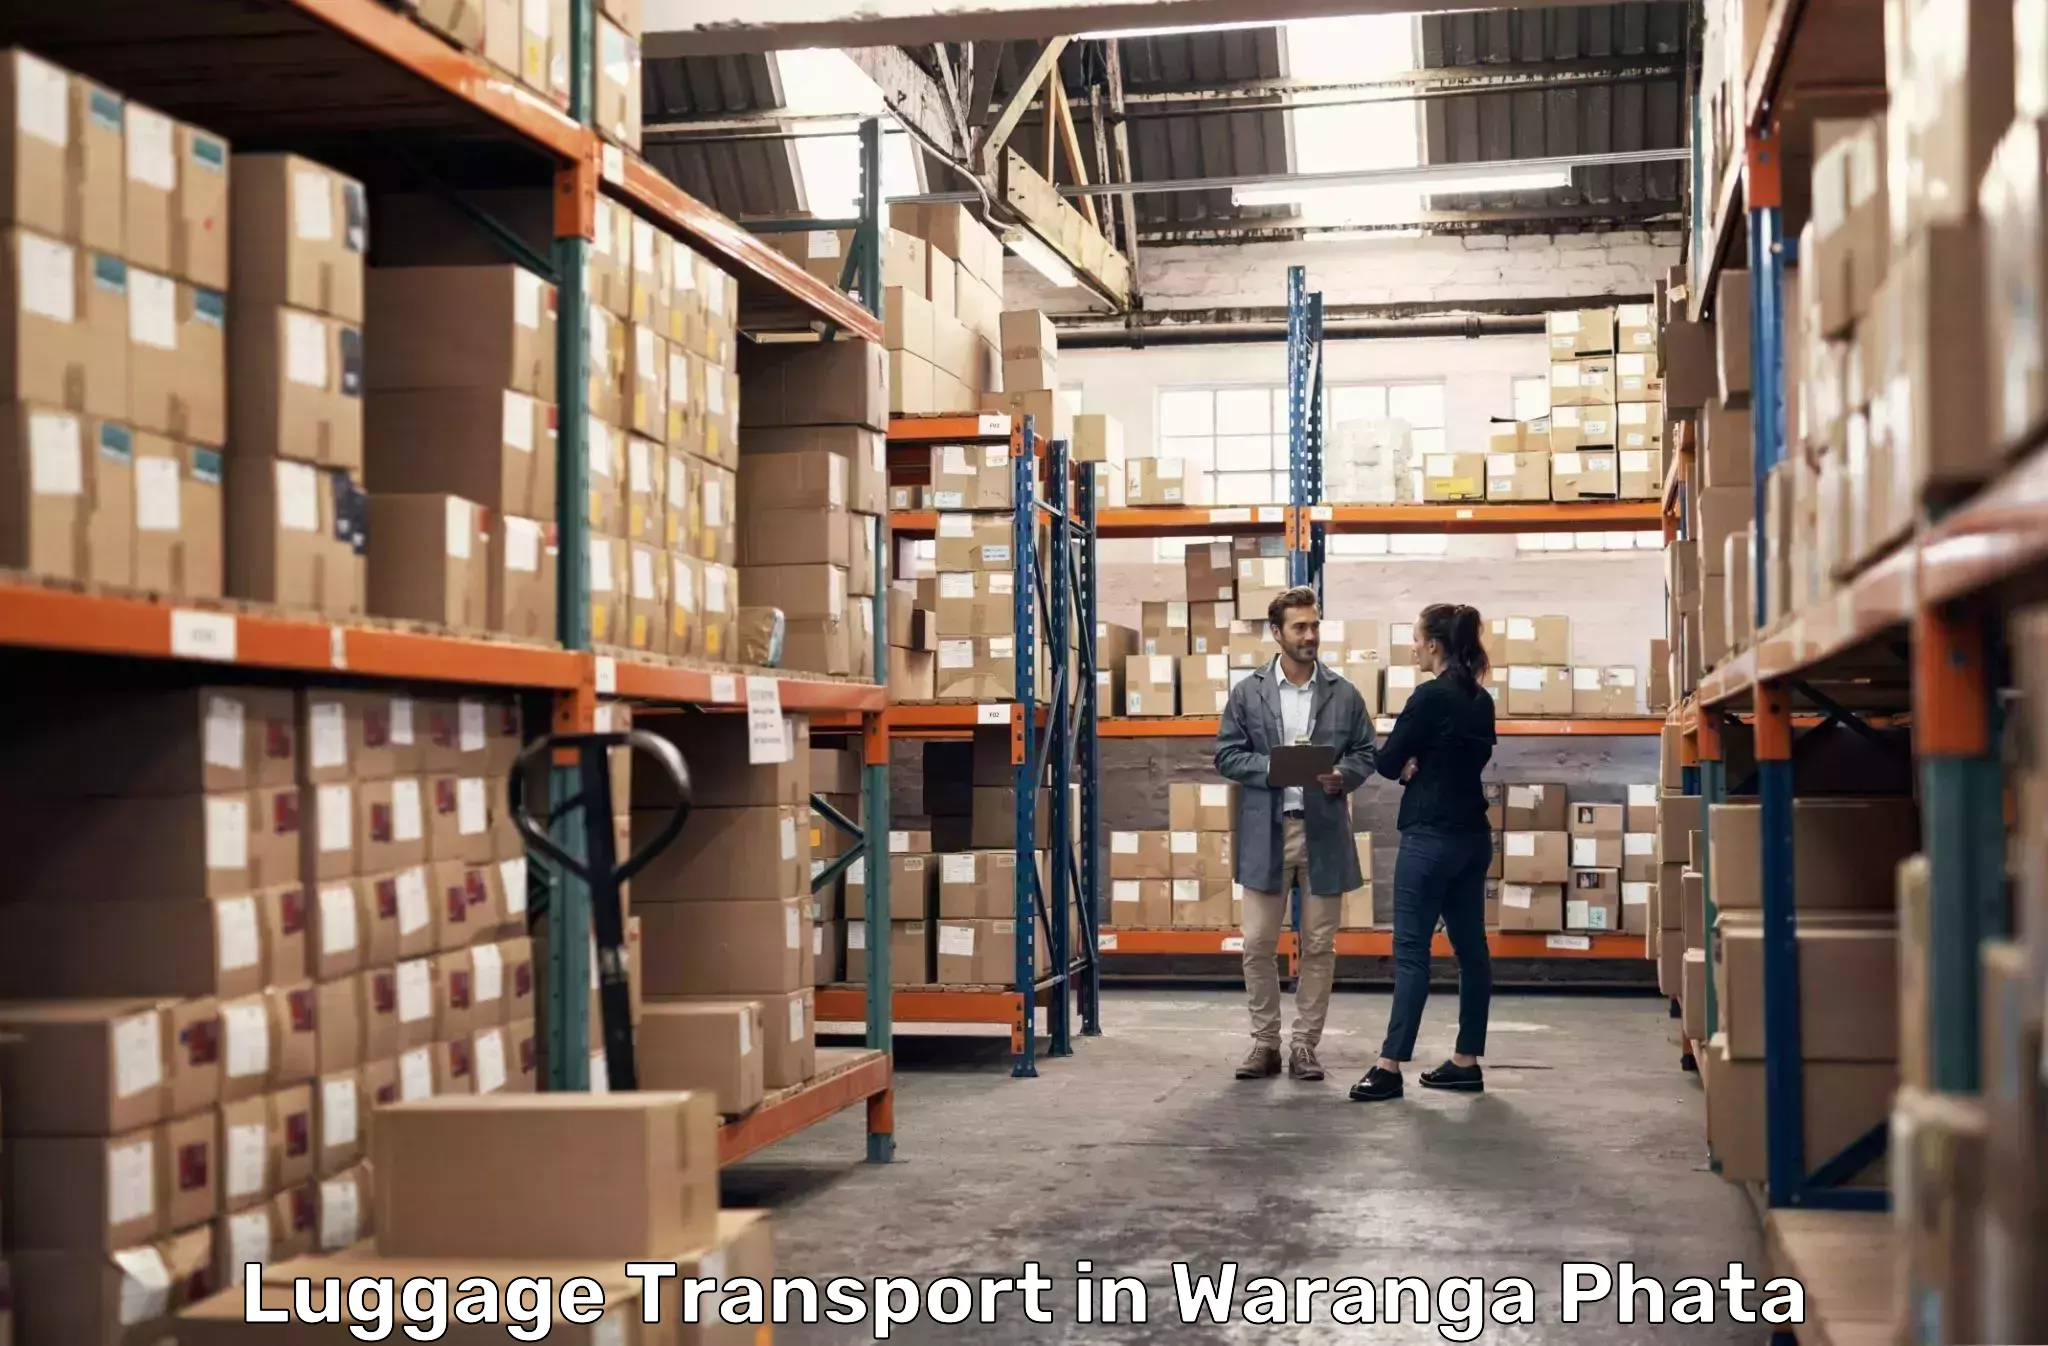 Baggage shipping advice in Waranga Phata